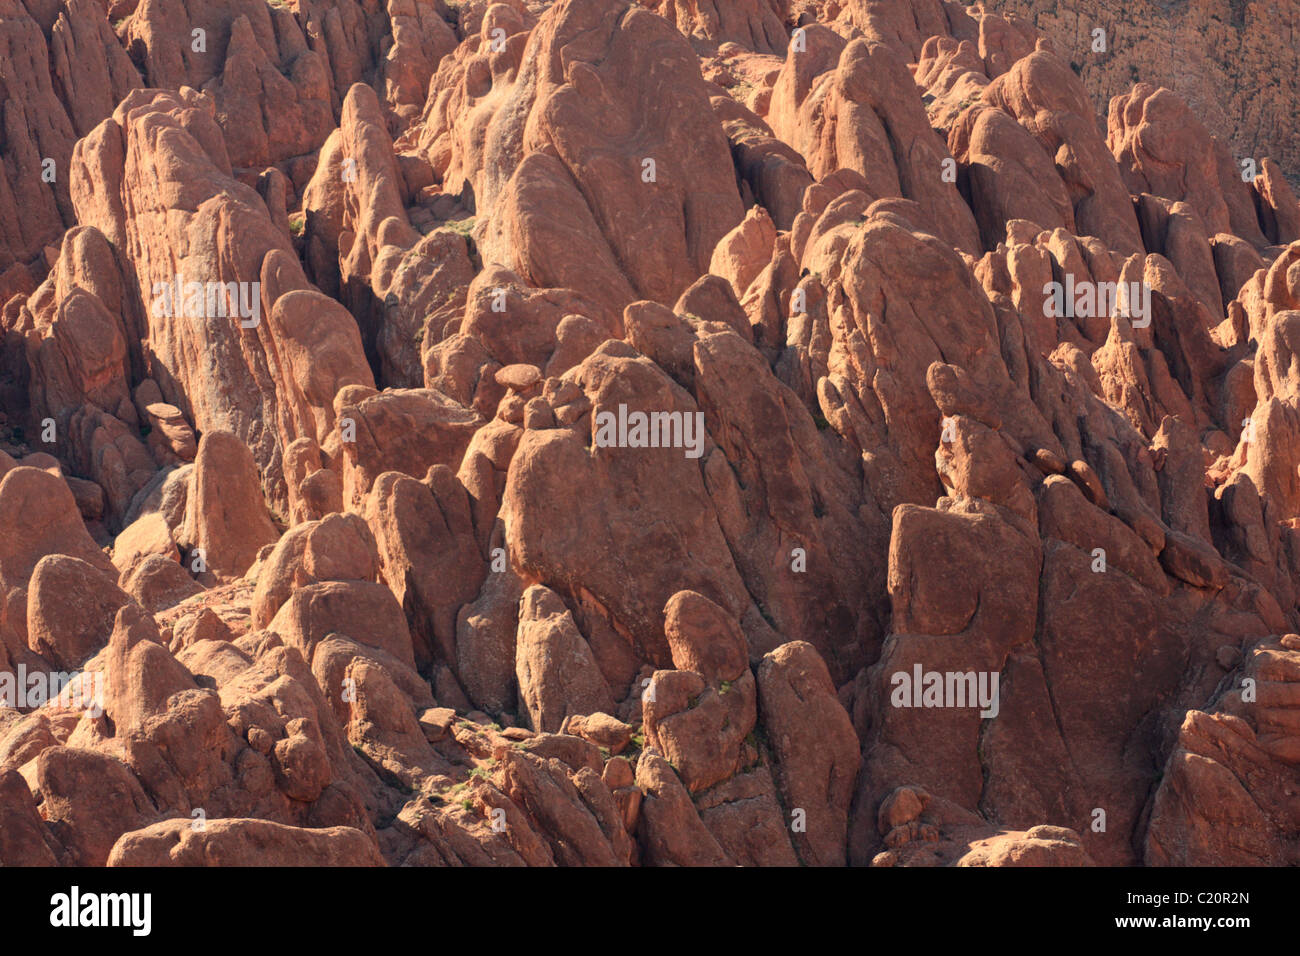 Tamnalt formazioni rocciose, Dades Valley, vicino a Ouarzazate, Alto Atlante, Marocco. Popolare attrazione turistica che domina N10 road. Foto Stock